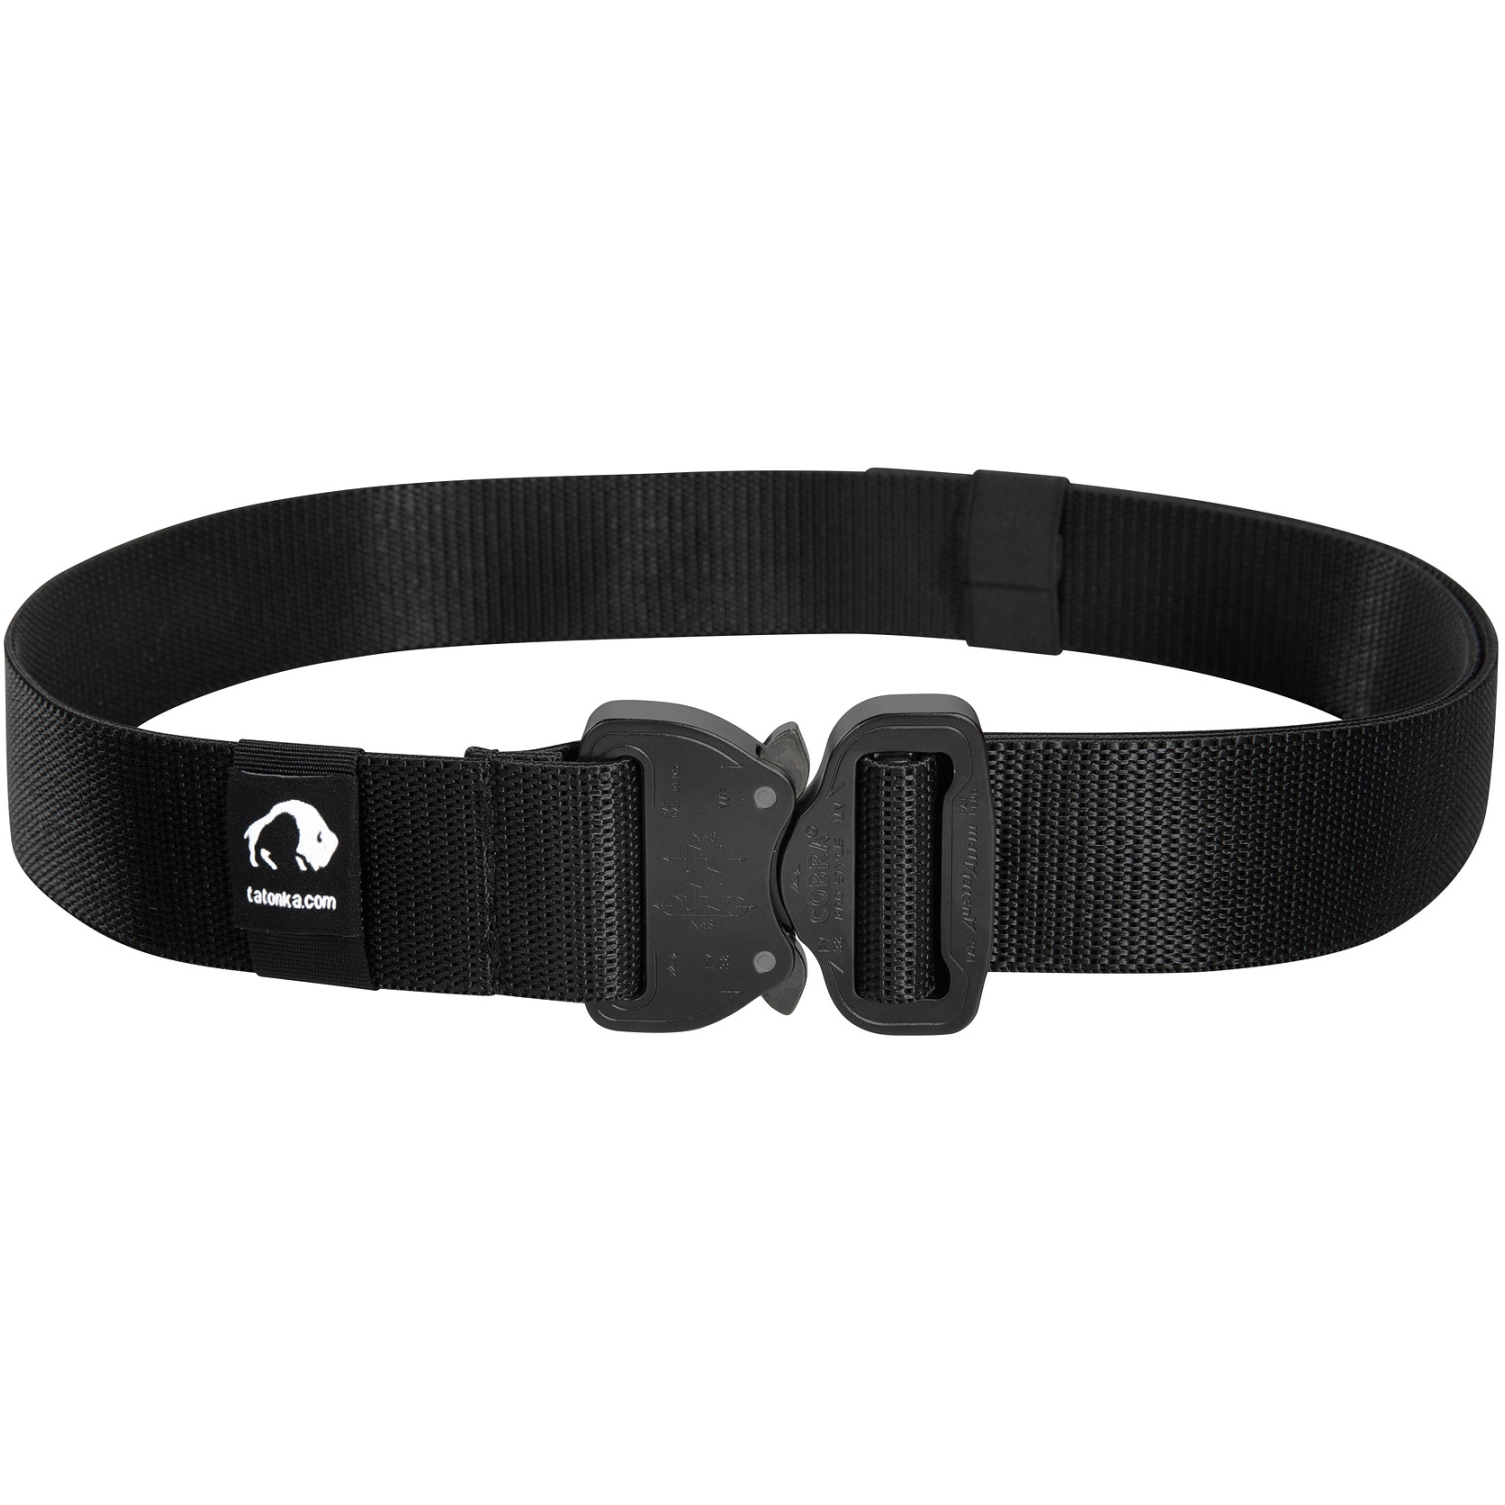 Produktbild von Tatonka Quick Release Stretch Belt 38 mm Gürtel - schwarz